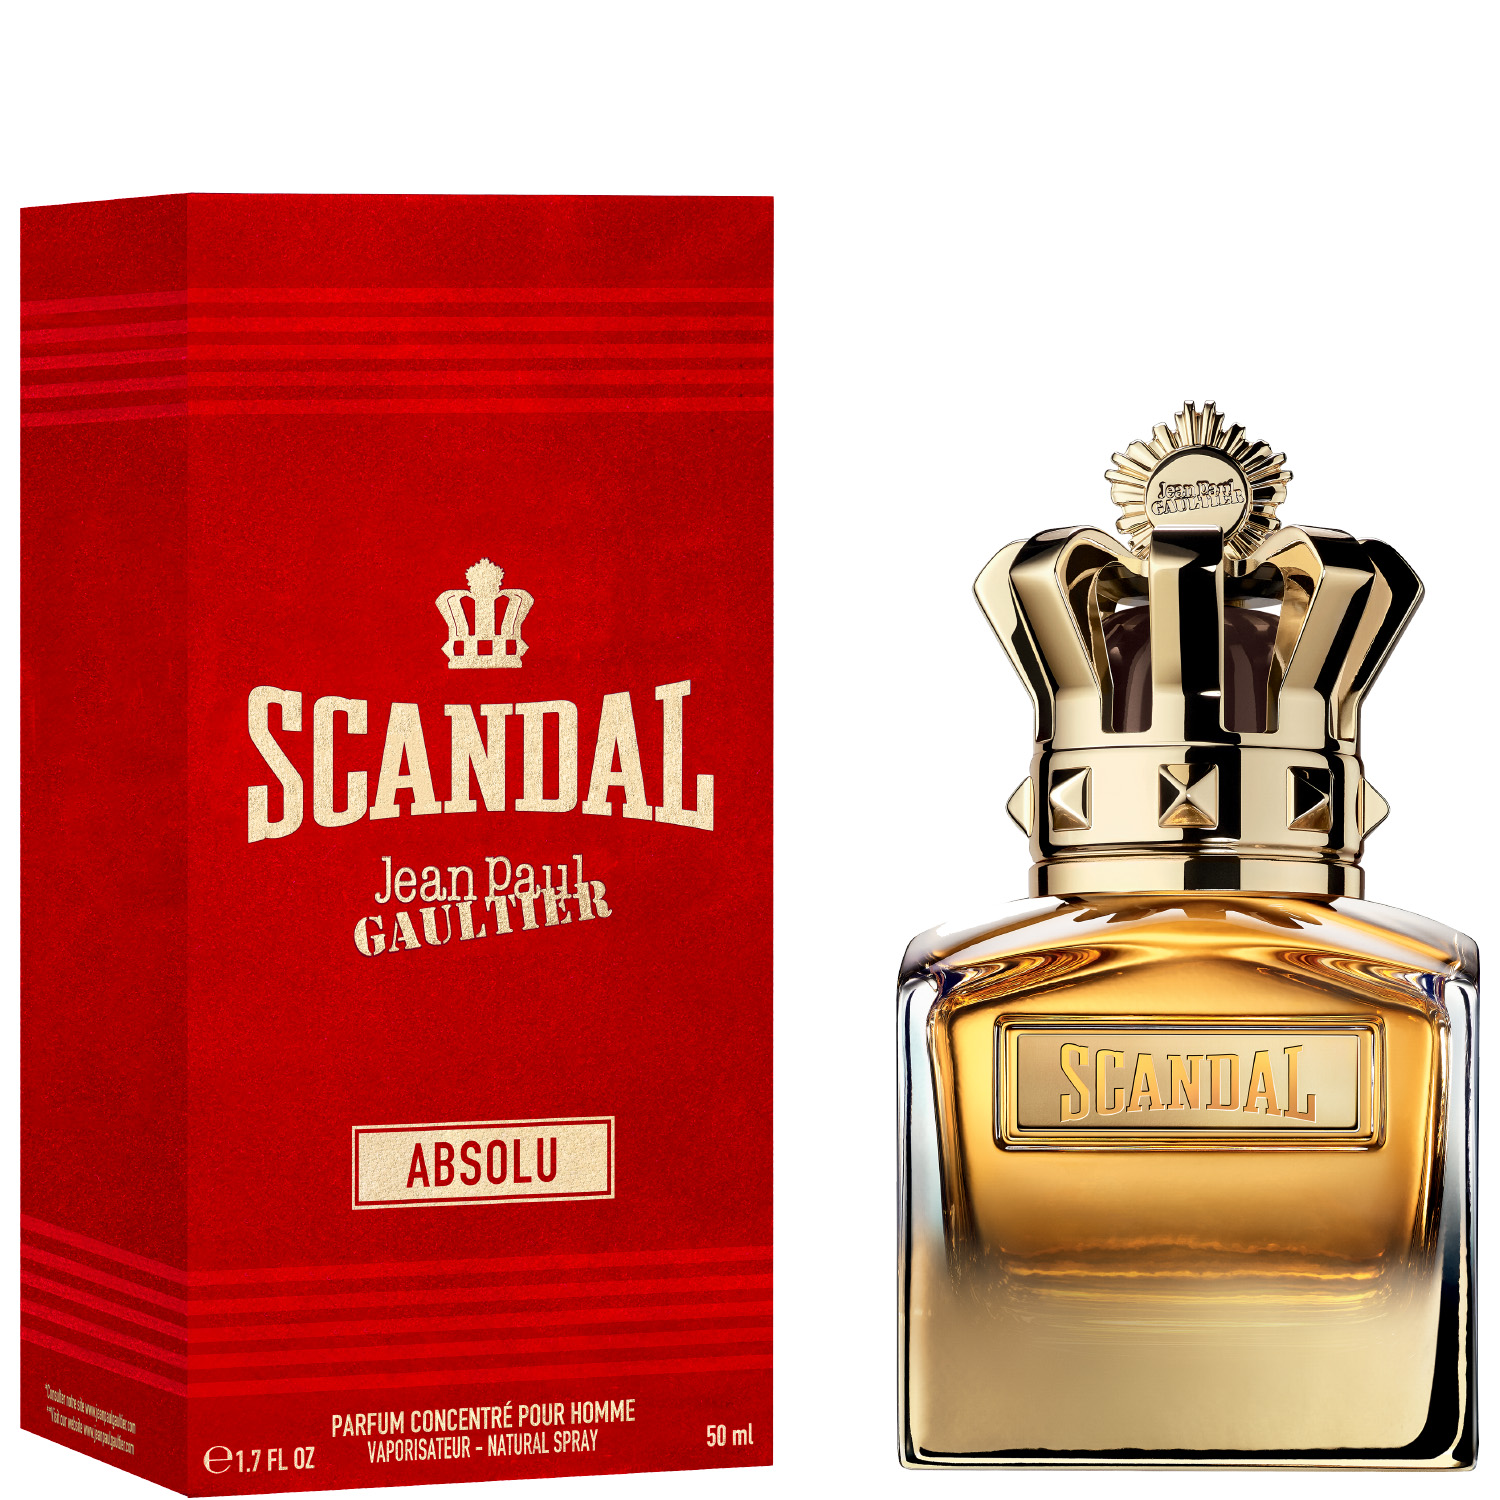 Jean Paul Gaultier Scandal Pour Homme Absolu Parfum Concentré 50ml